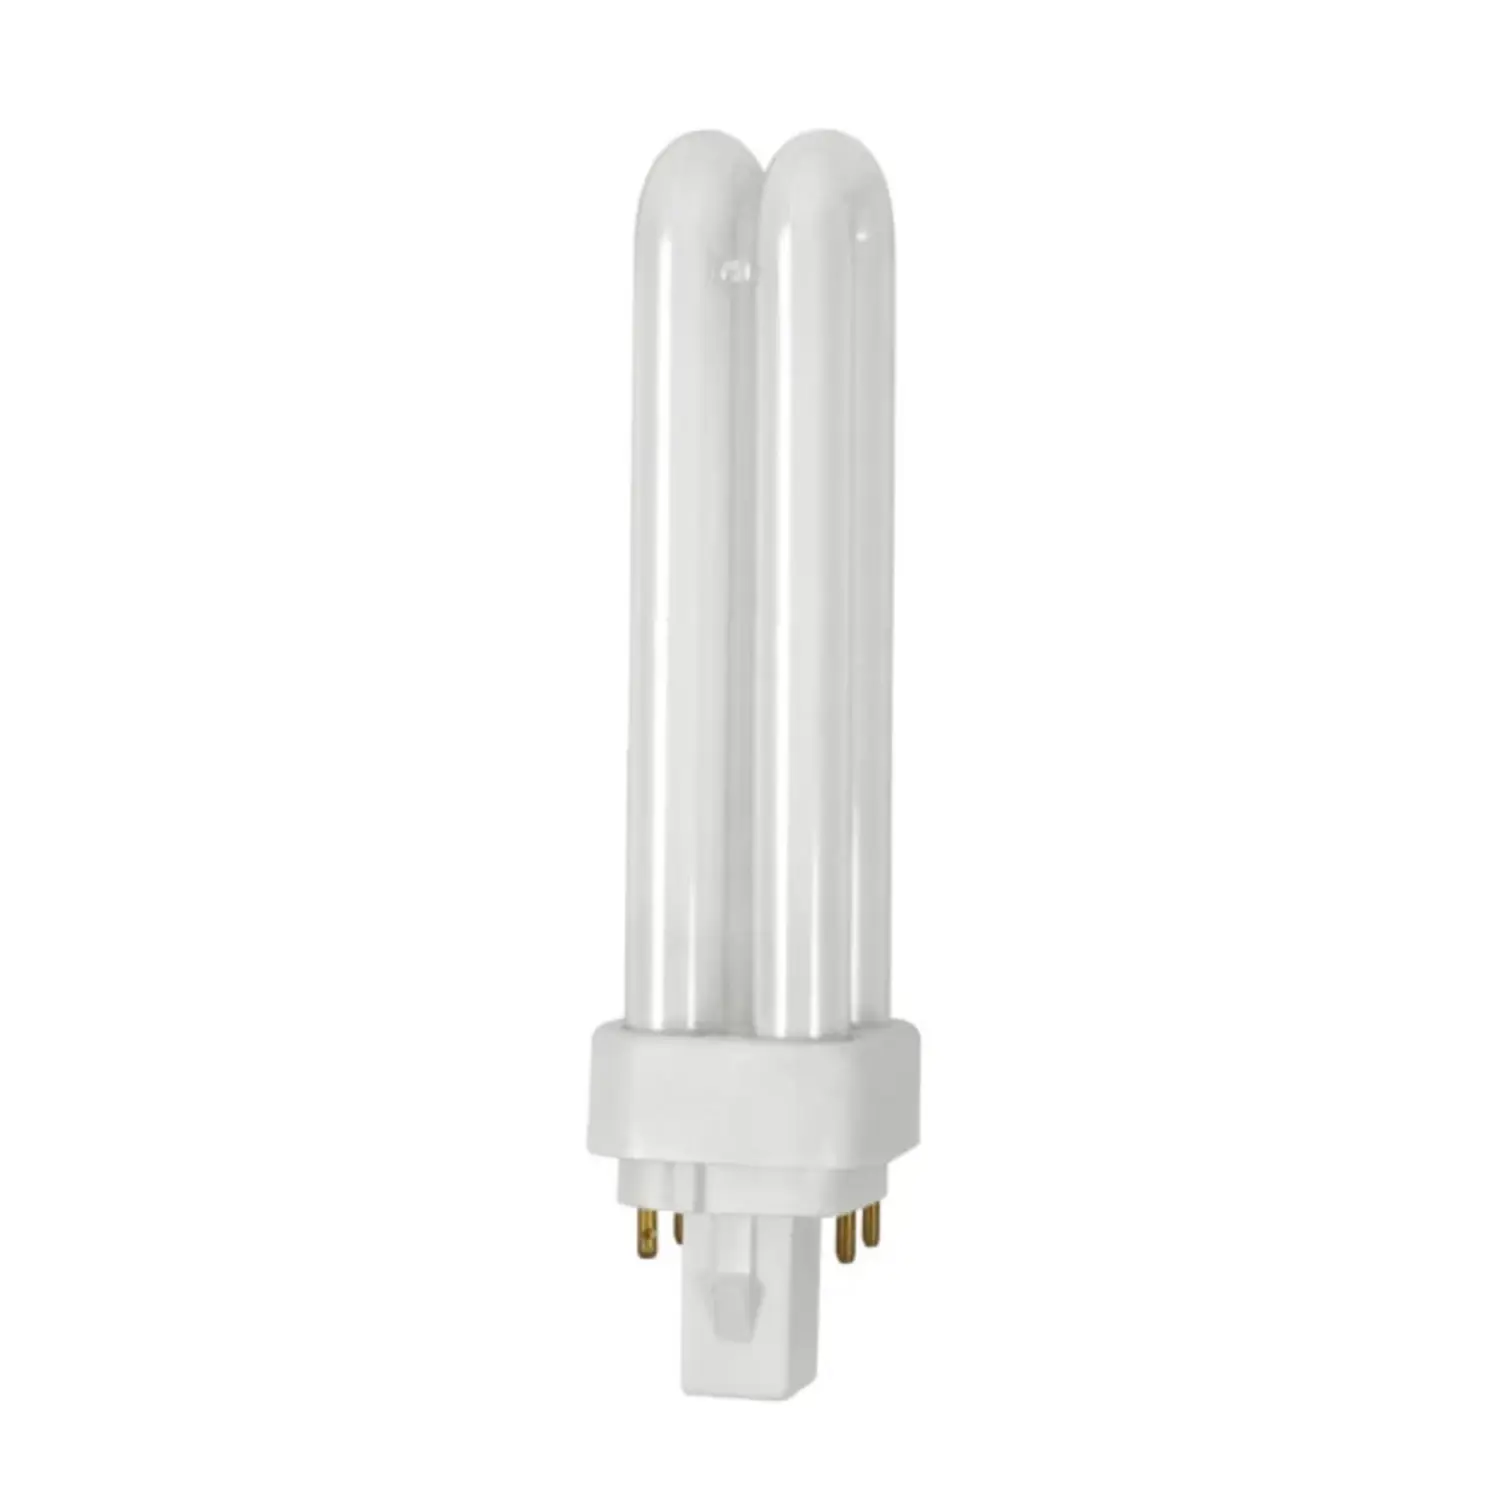 immagine del prodotto lampadina neon fluorescente g24d t2u 4pin CE bianco naturale 26 watt 10000 ore kan 08961